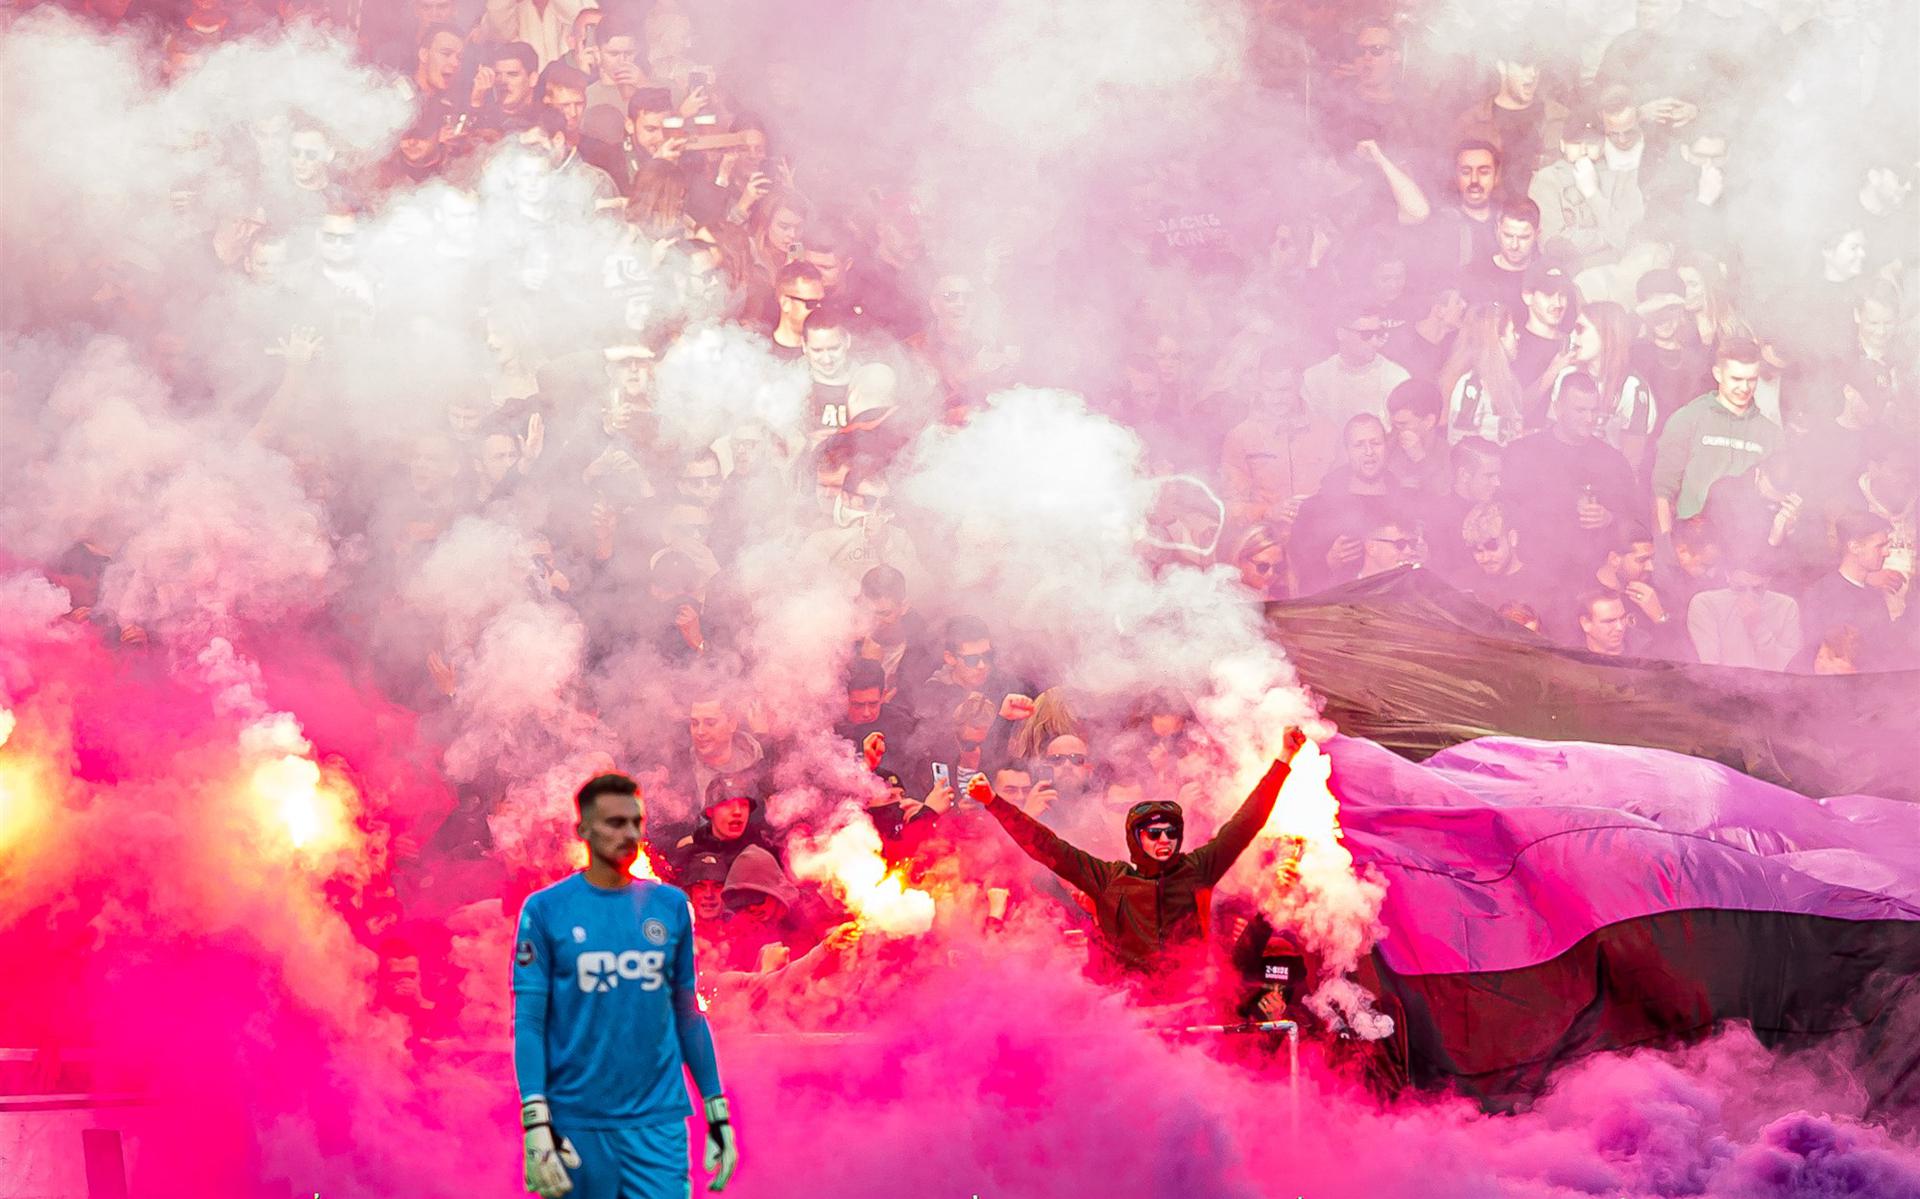 Supporters van FC Groningen steken vuurwerk af tijdens de wedstrijd tegen Fortuna, op 13 november.